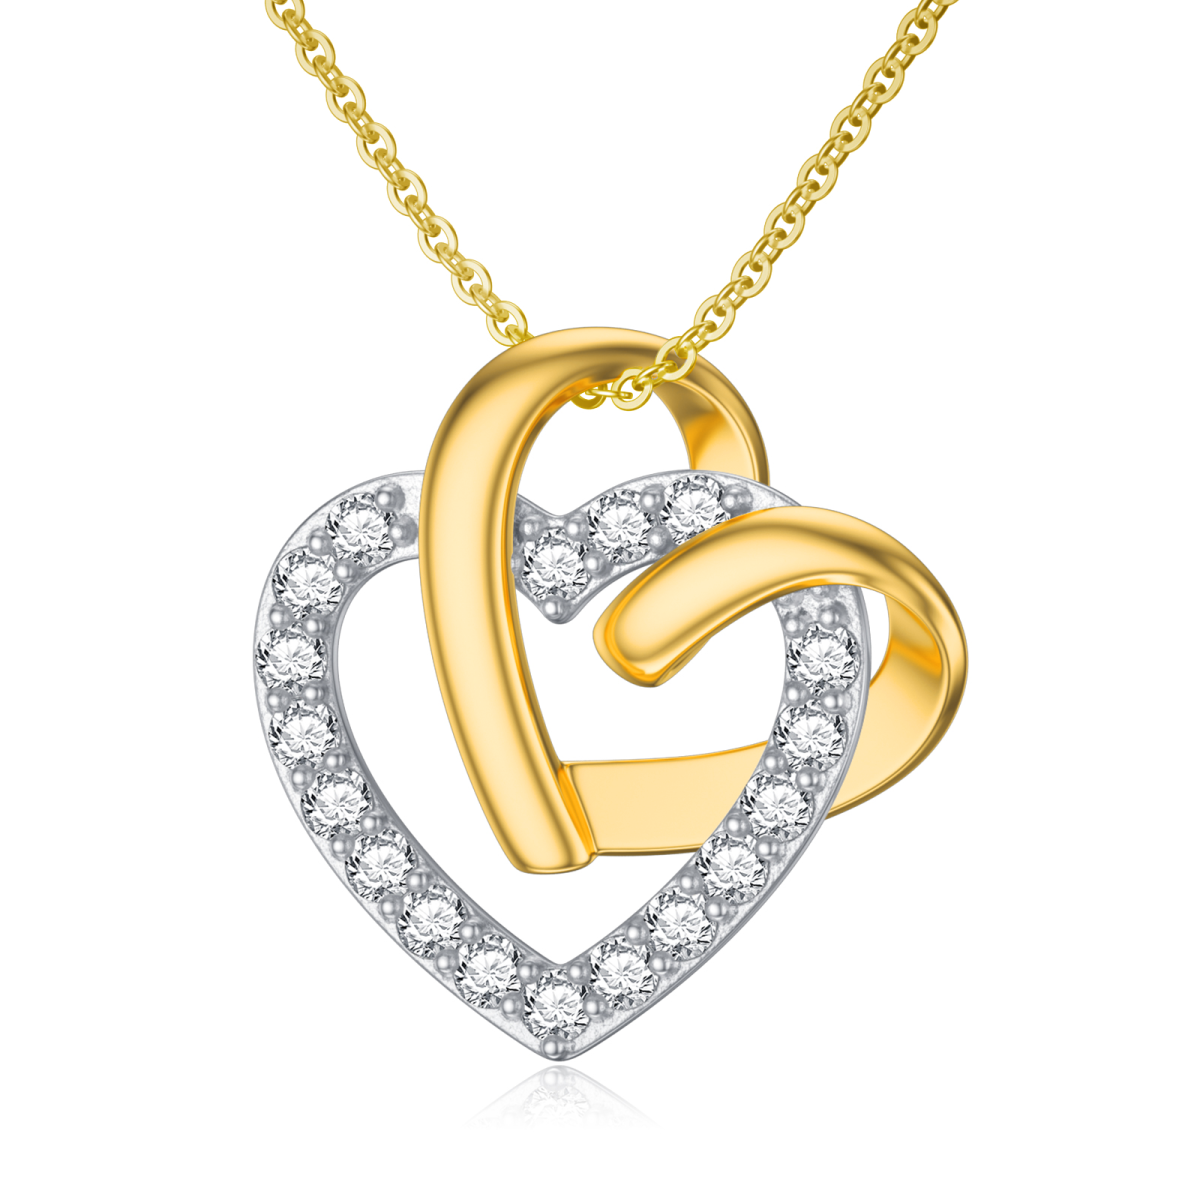 Halskette mit Herzanhänger aus 9 Karat Gold mit Zirkonia-1